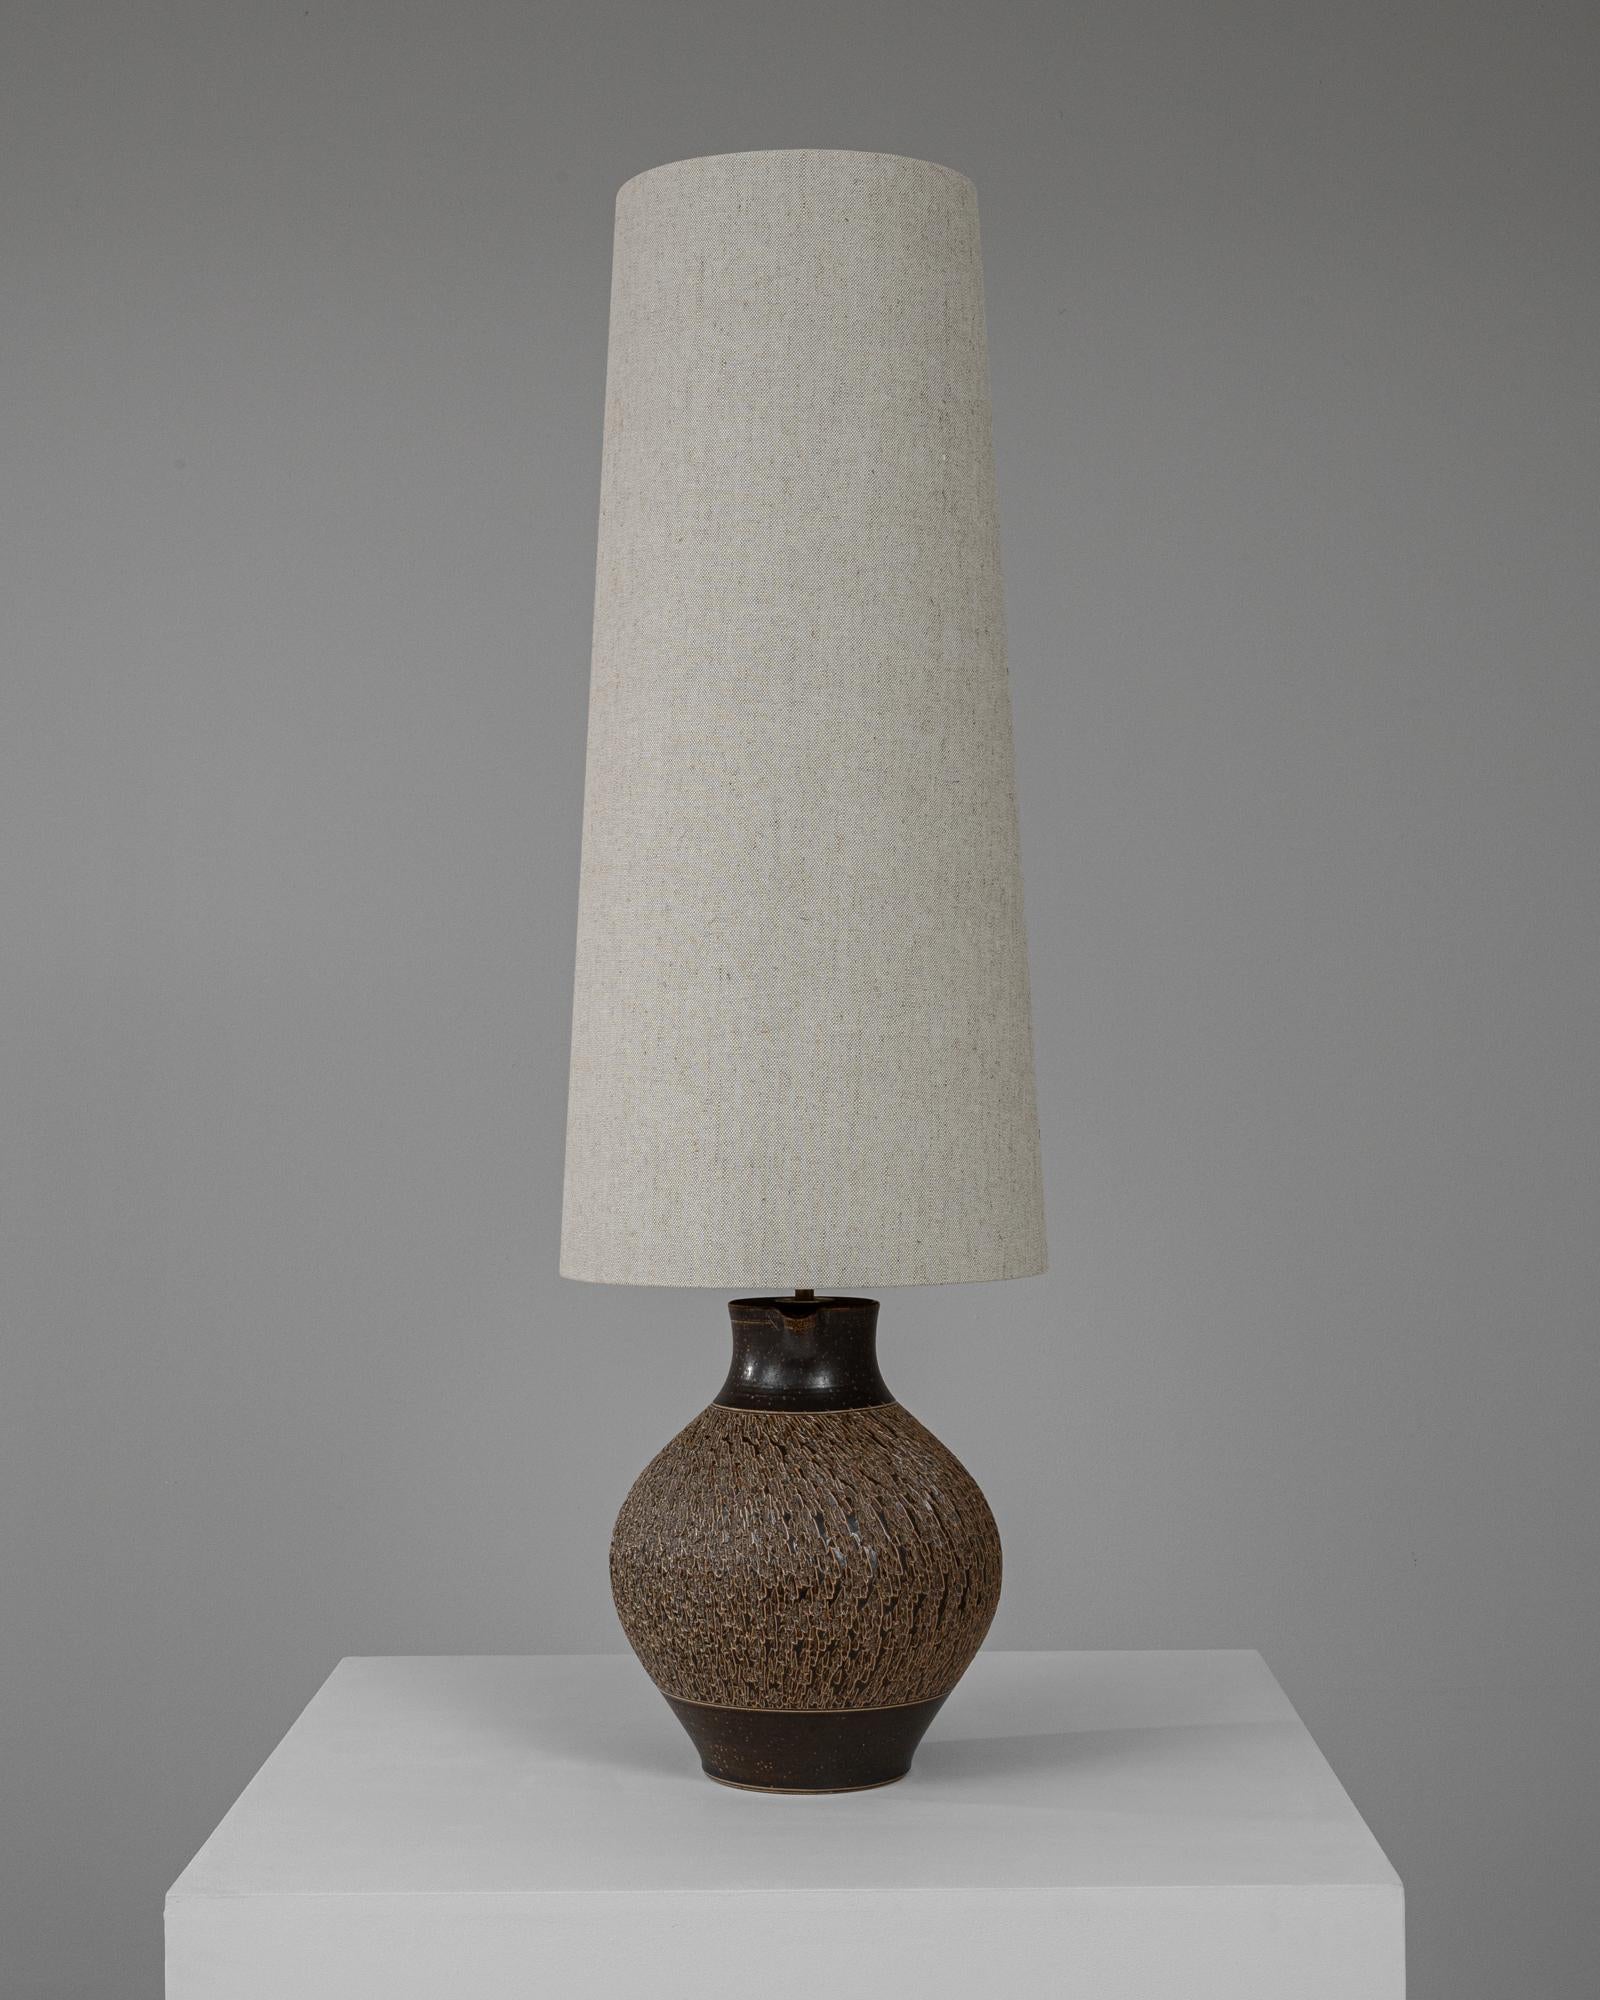 Cette charmante lampe de table en céramique allemande du XXe siècle offre un mélange d'allure rustique et de design fonctionnel, ce qui en fait un ajout charmant à n'importe quelle pièce. La base de la lampe est fabriquée en céramique avec une